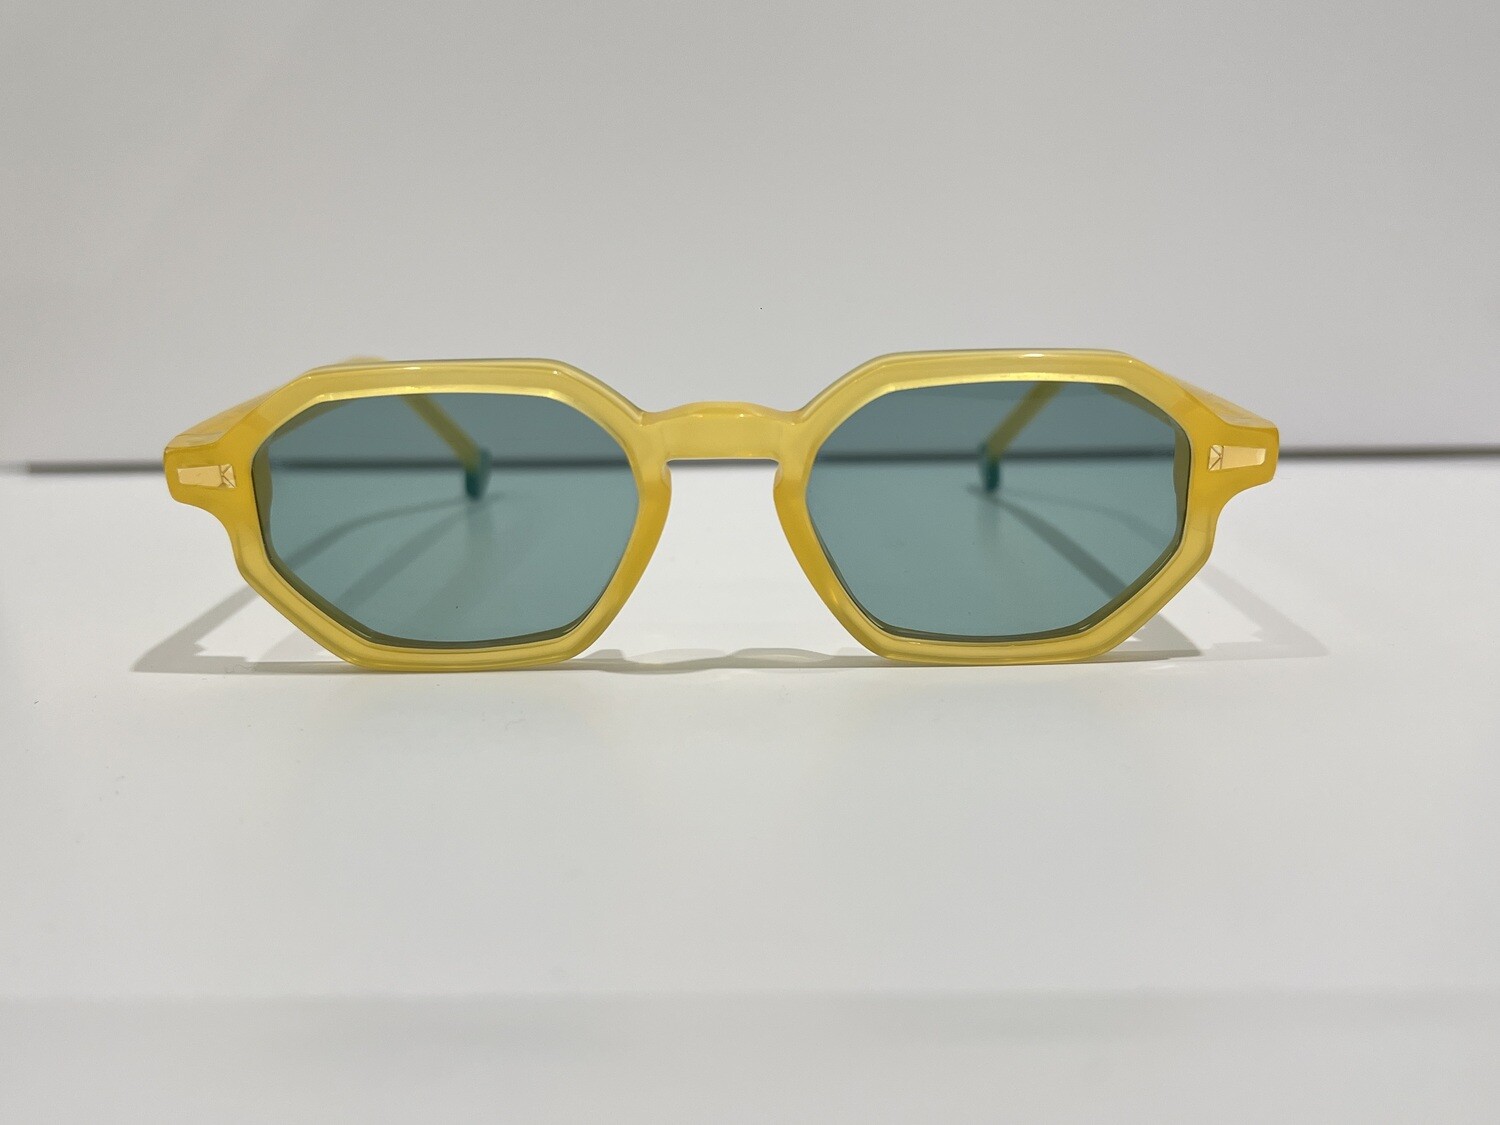 KYME OTIS 04 yellow / green occhiali